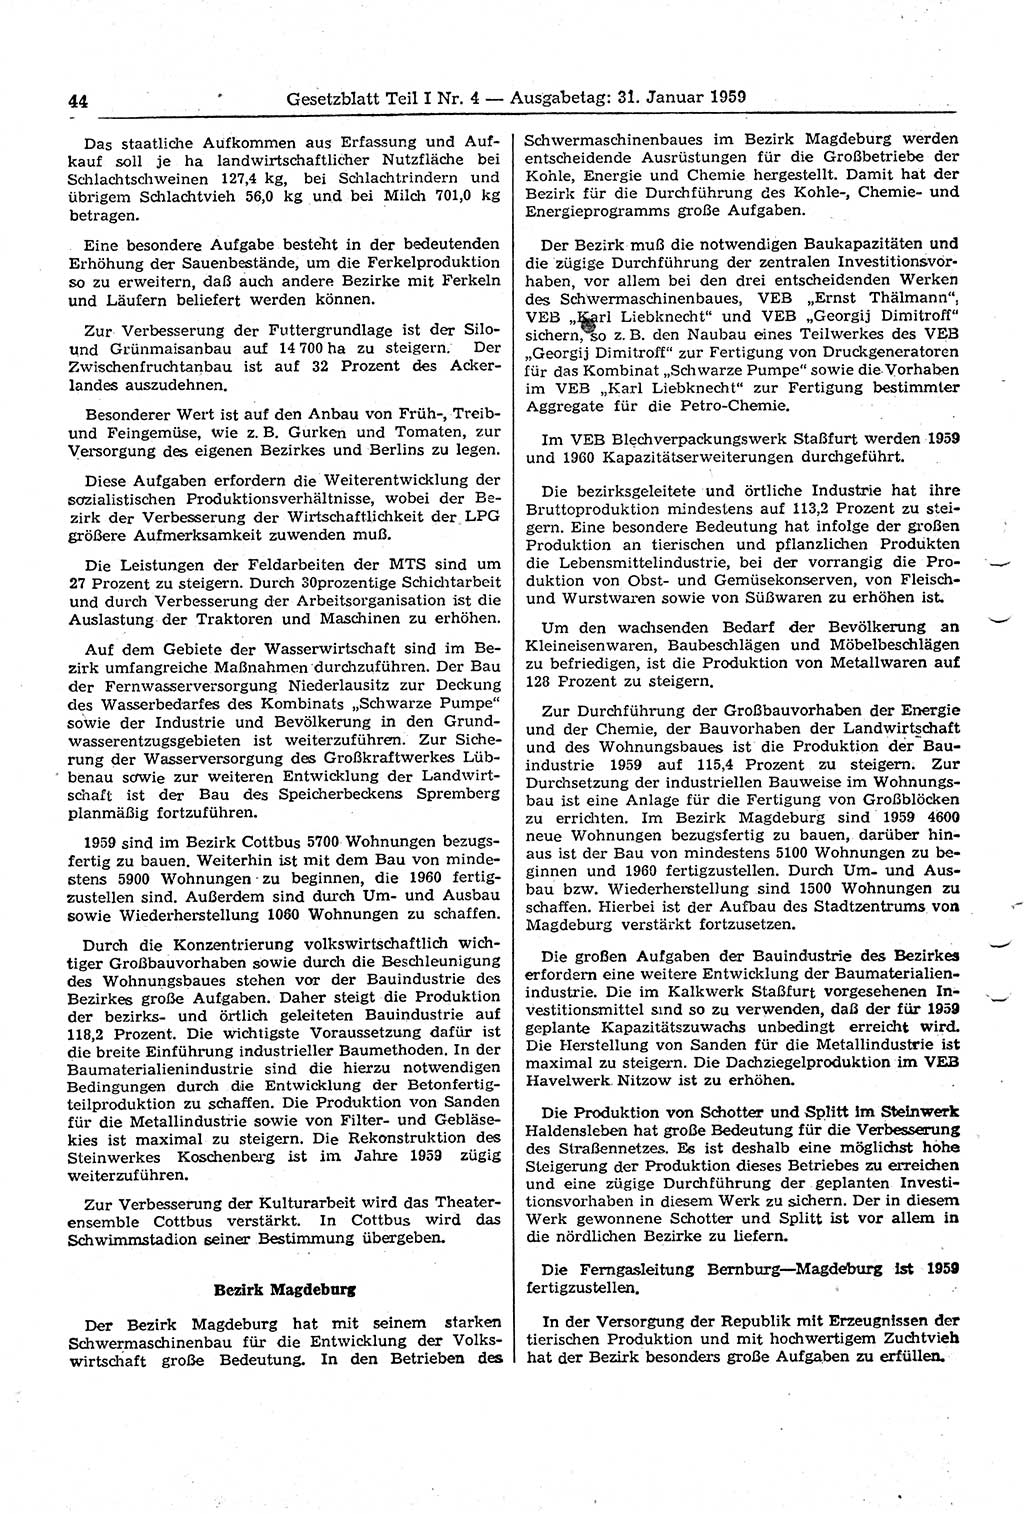 Gesetzblatt (GBl.) der Deutschen Demokratischen Republik (DDR) Teil Ⅰ 1959, Seite 44 (GBl. DDR Ⅰ 1959, S. 44)